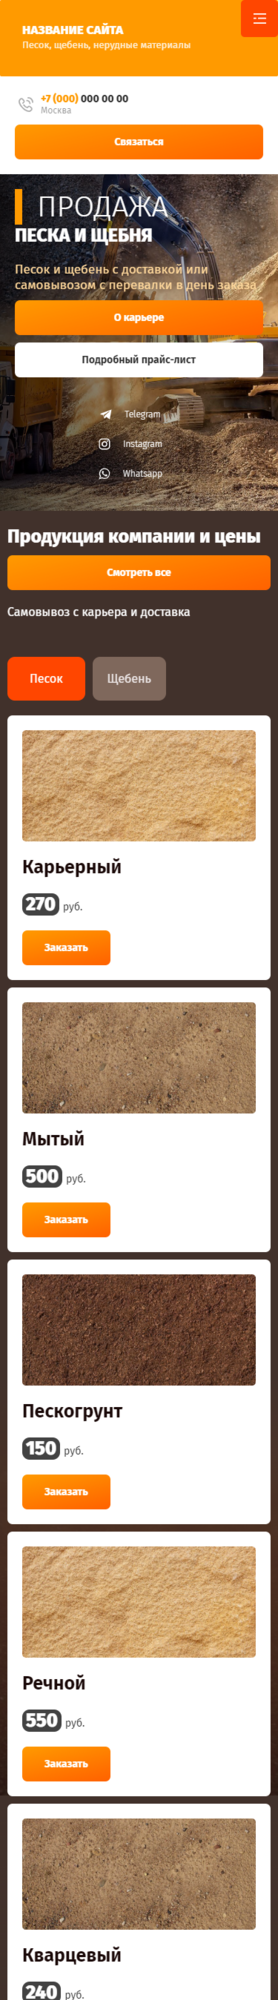 Готовый Сайт-Бизнес № 3231773 - Щебень, песок, нерудные материалы (Мобильная версия)